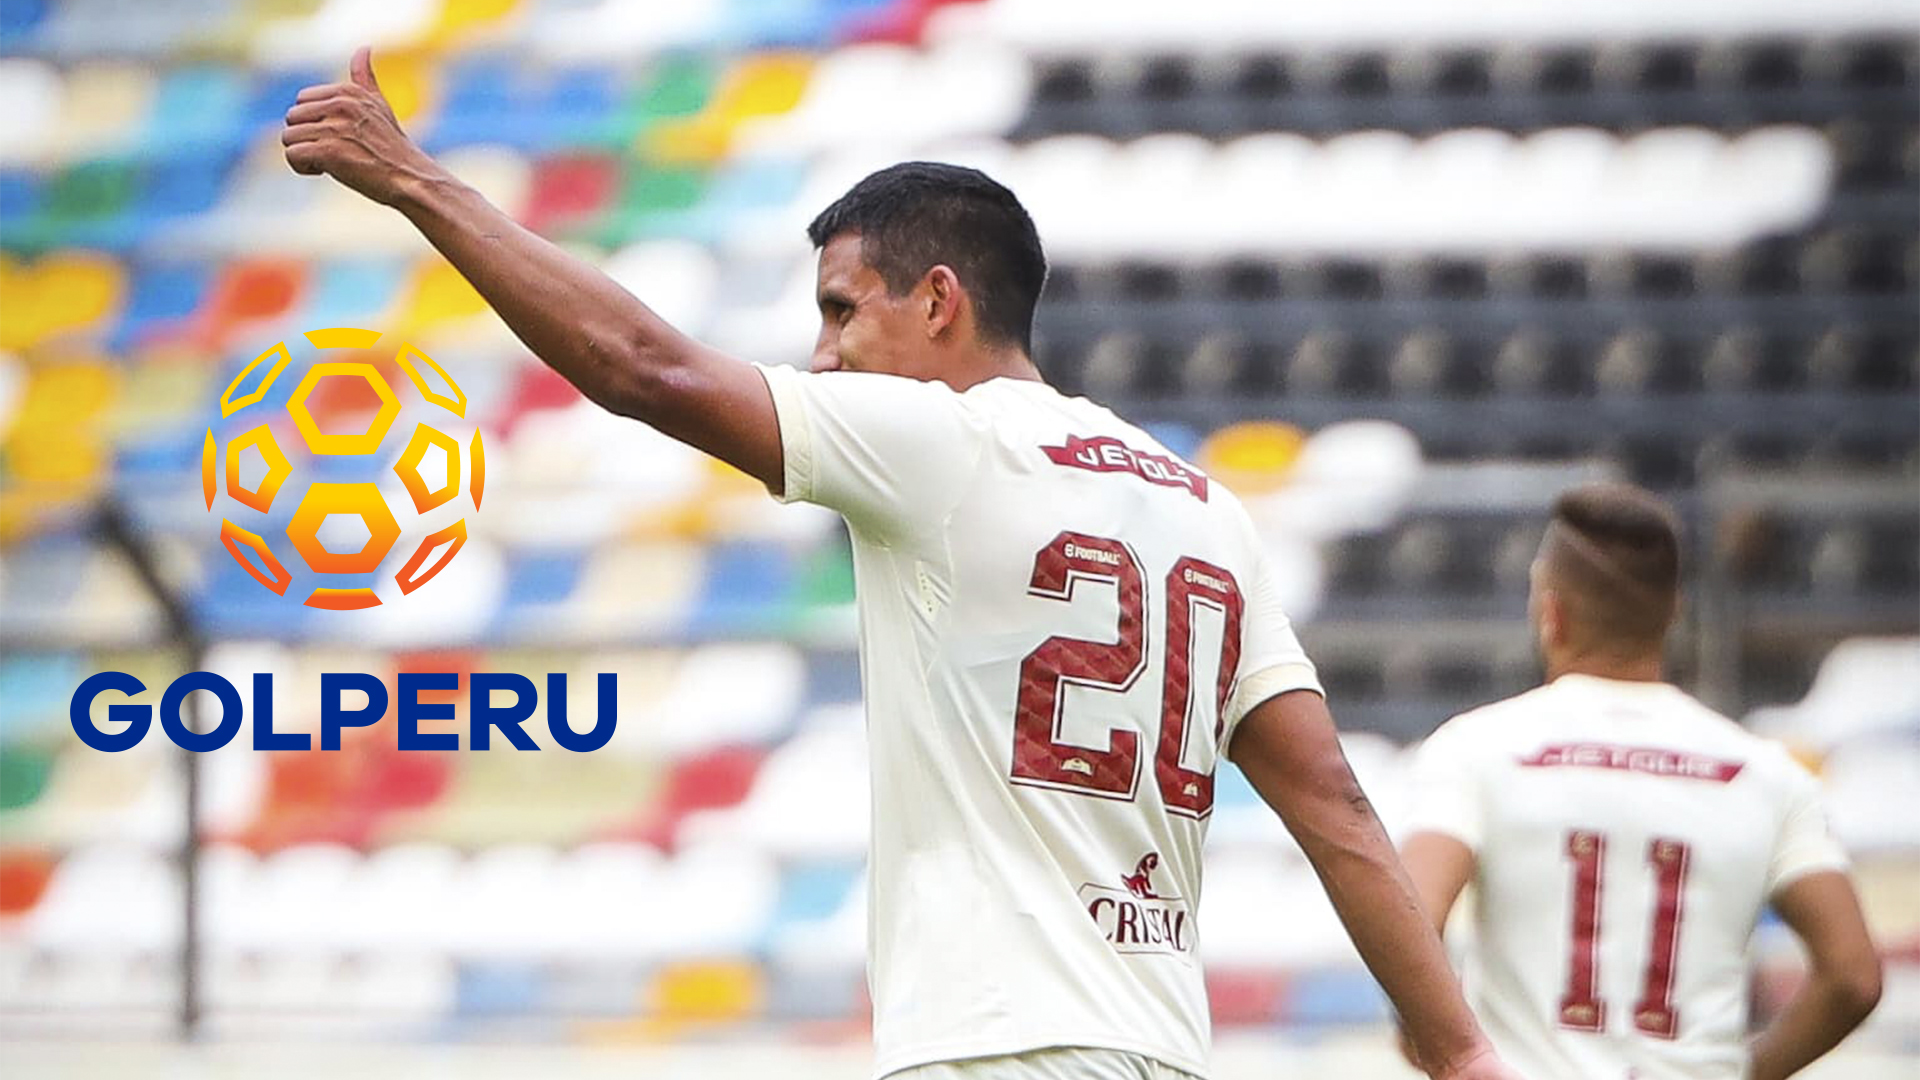 Contrato de la 'U' con el Consorcio Fútbol Perú, dueños de GOLPERU, se extendió por 15 años. (Universitario)